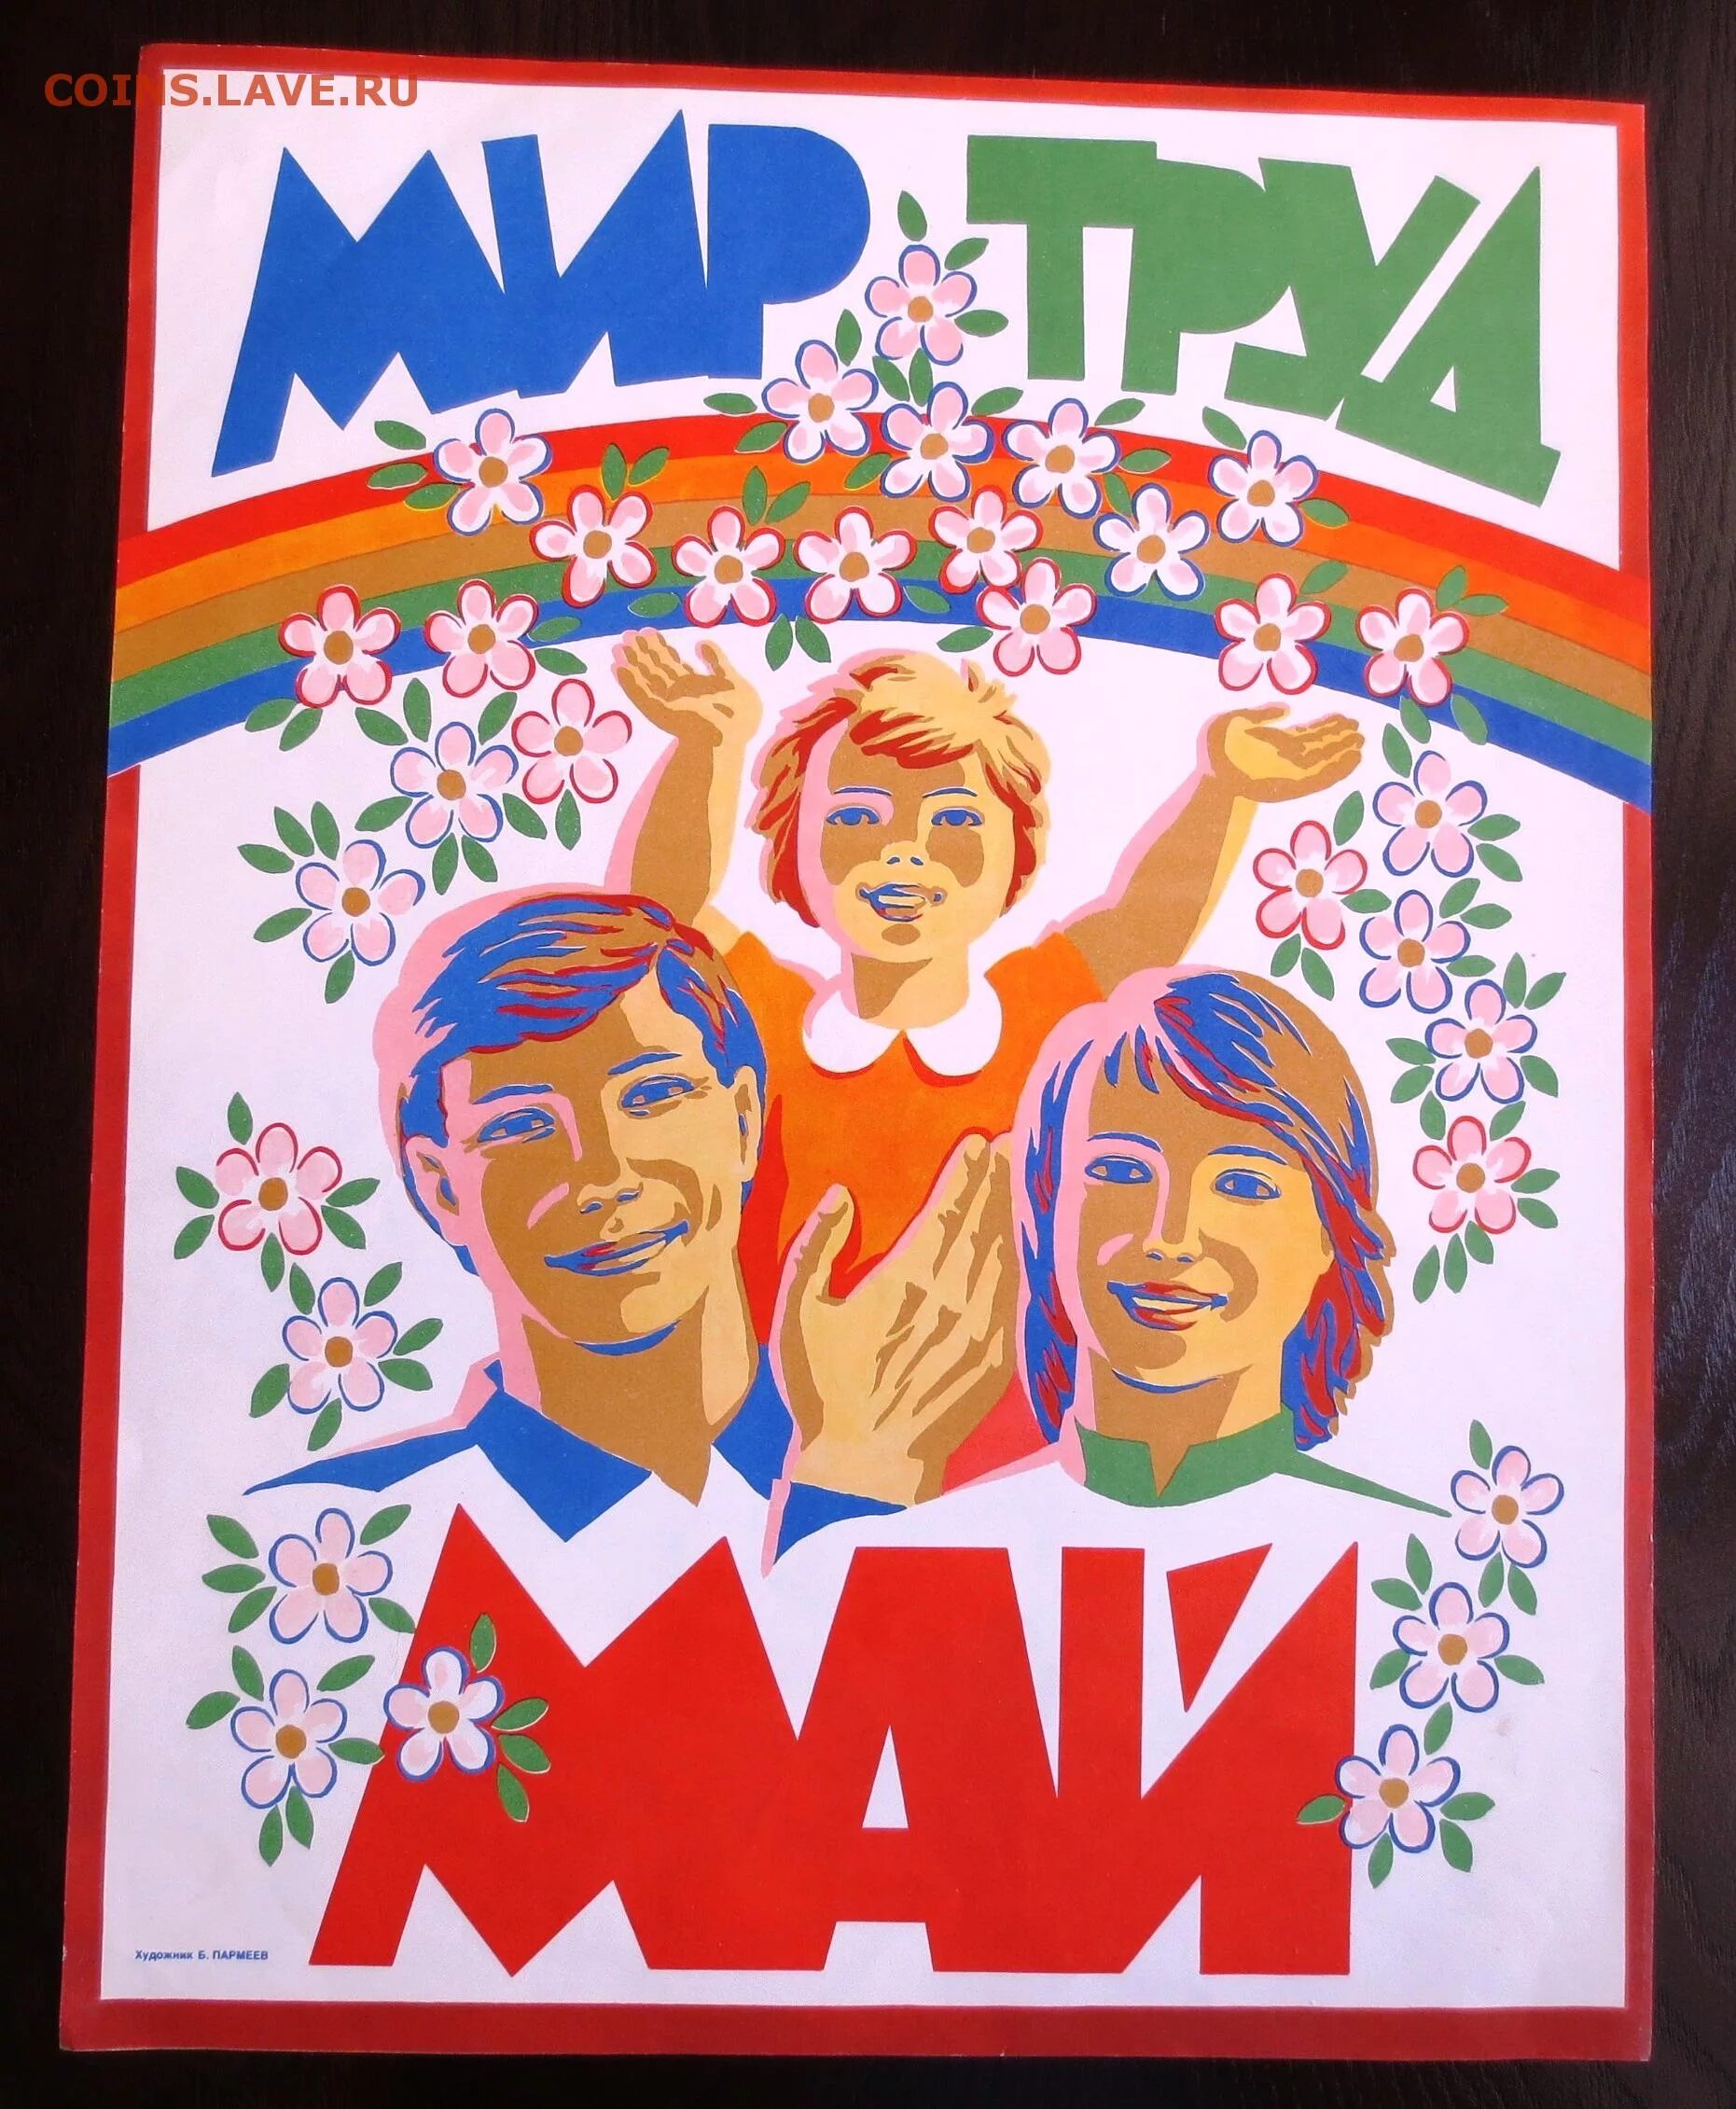 1 Мая плакат. Лозунги 90-х годов. Мир труд май лозунг. Плакаты 80-х годов.